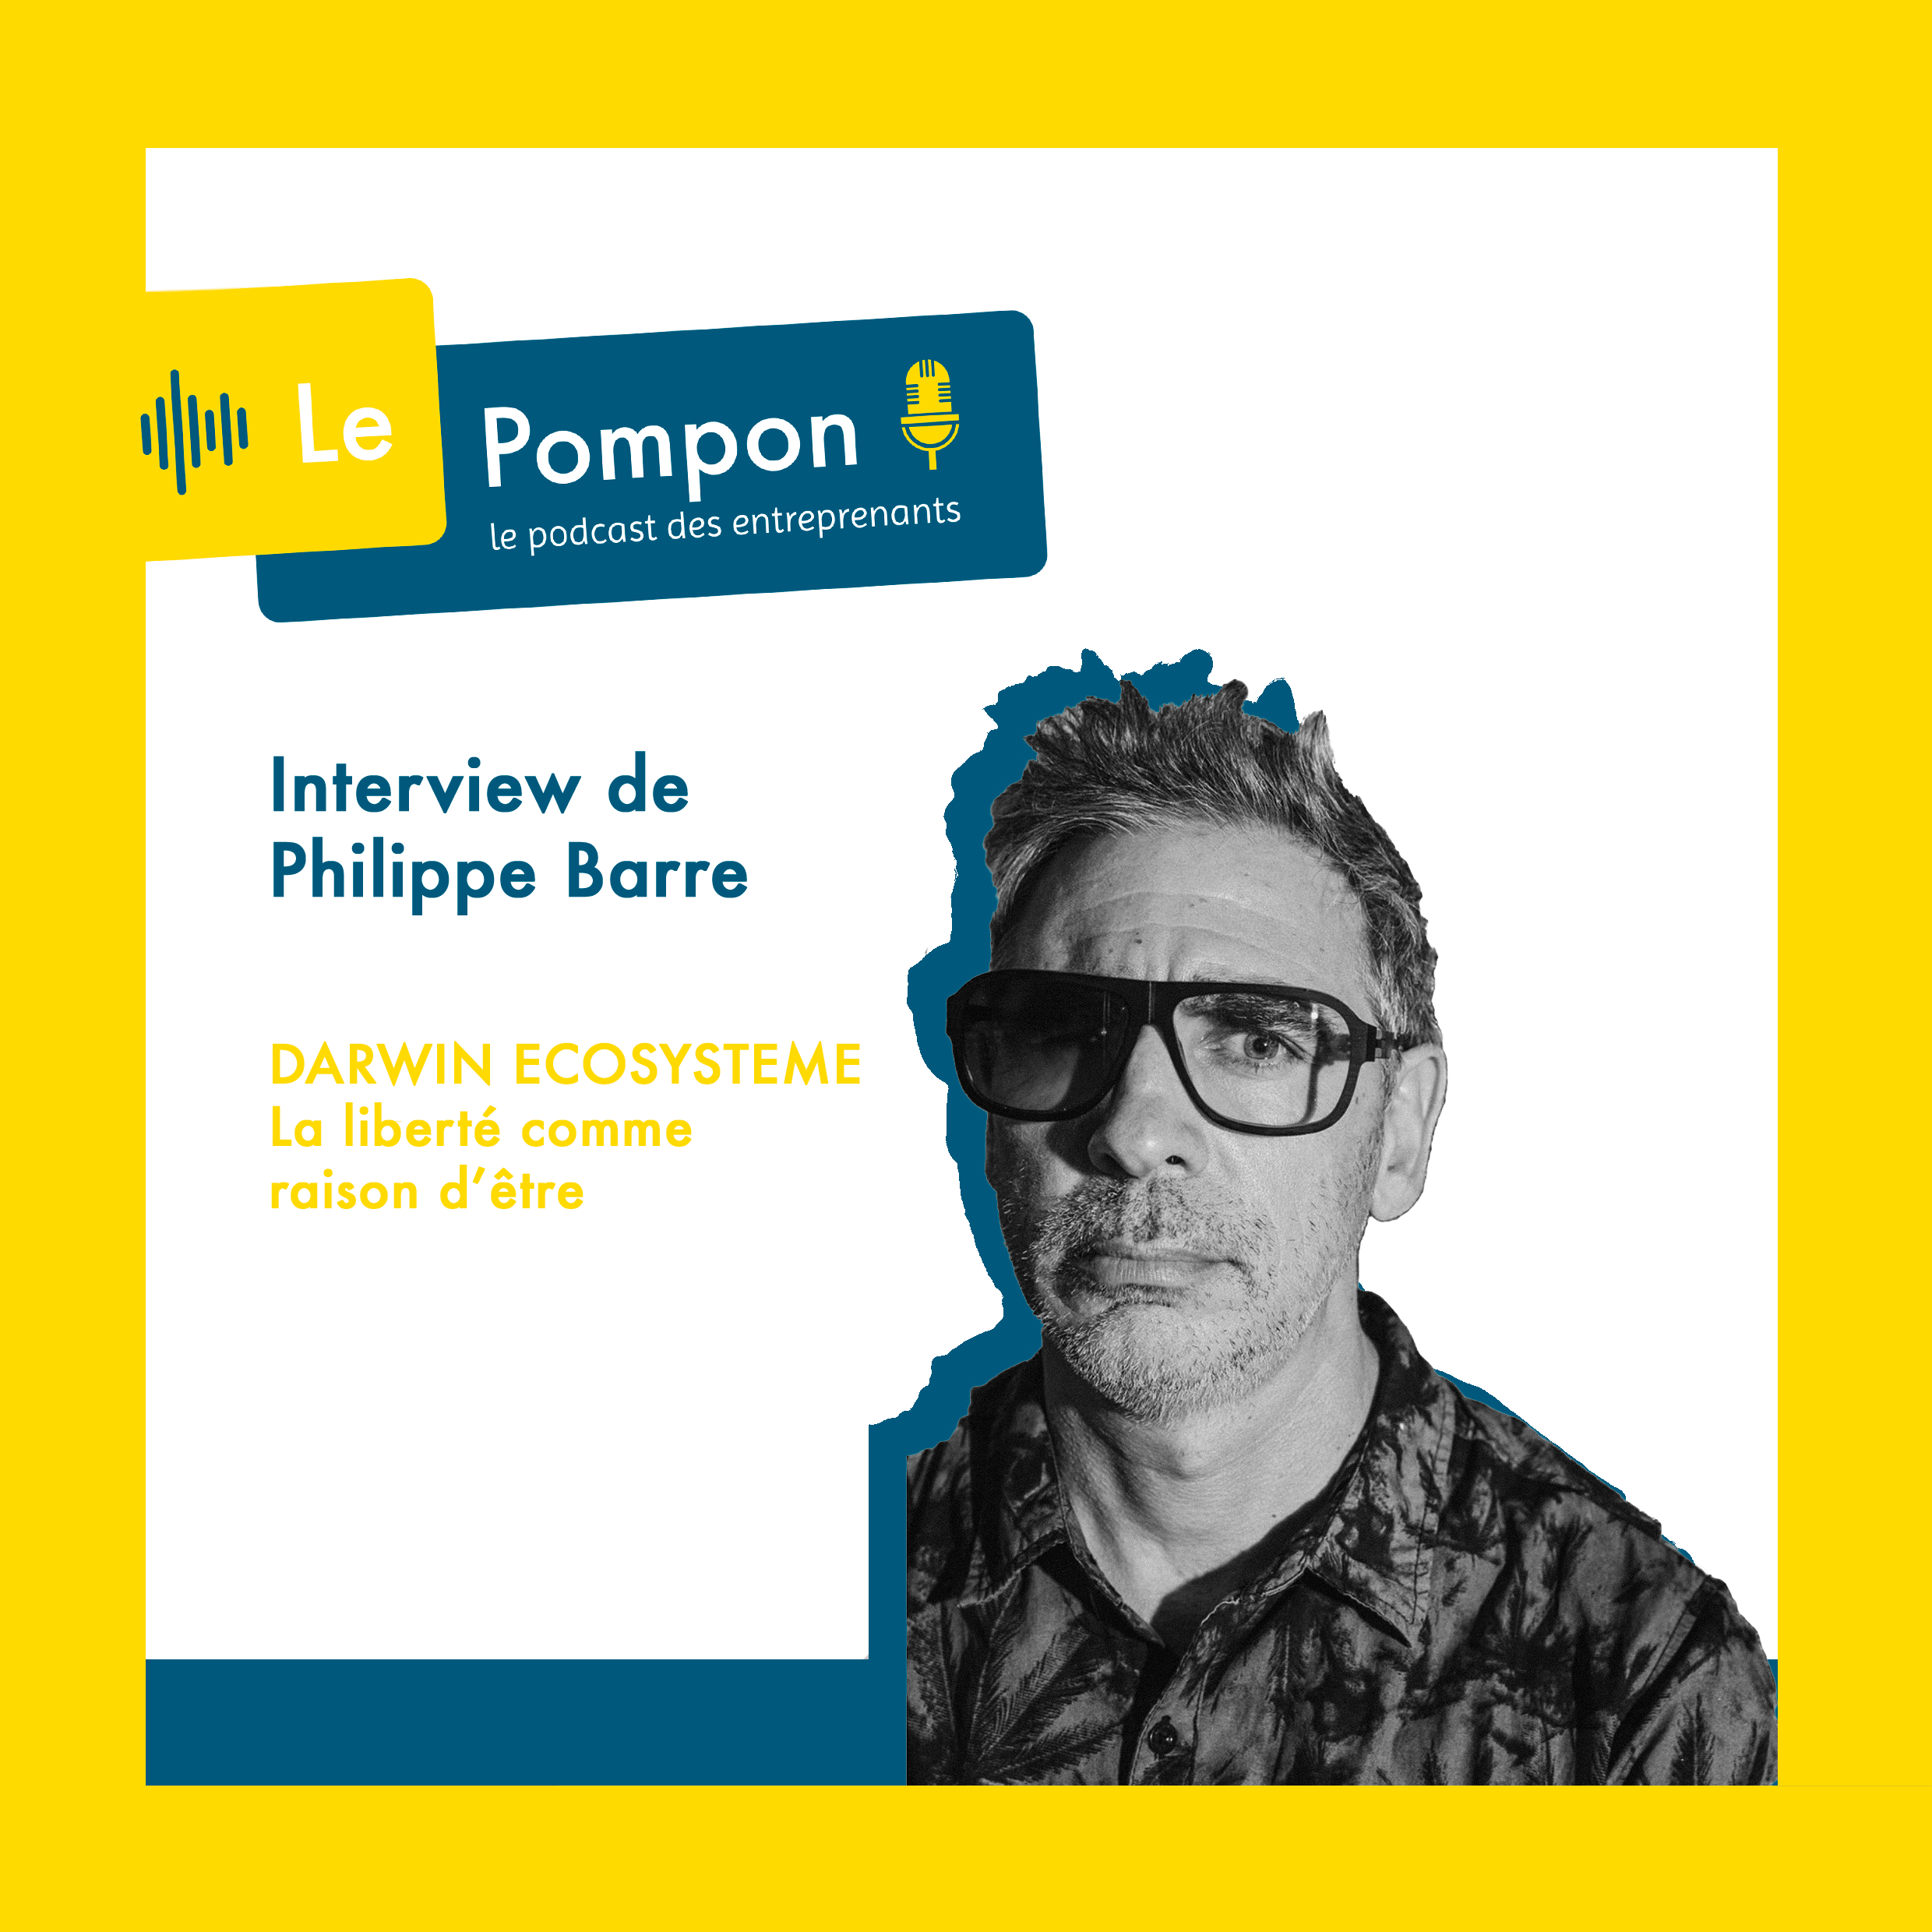 Illustration de l'épisode 30 du Podcast Le Pompon : Philippe Barre, Darwin Bordeaux